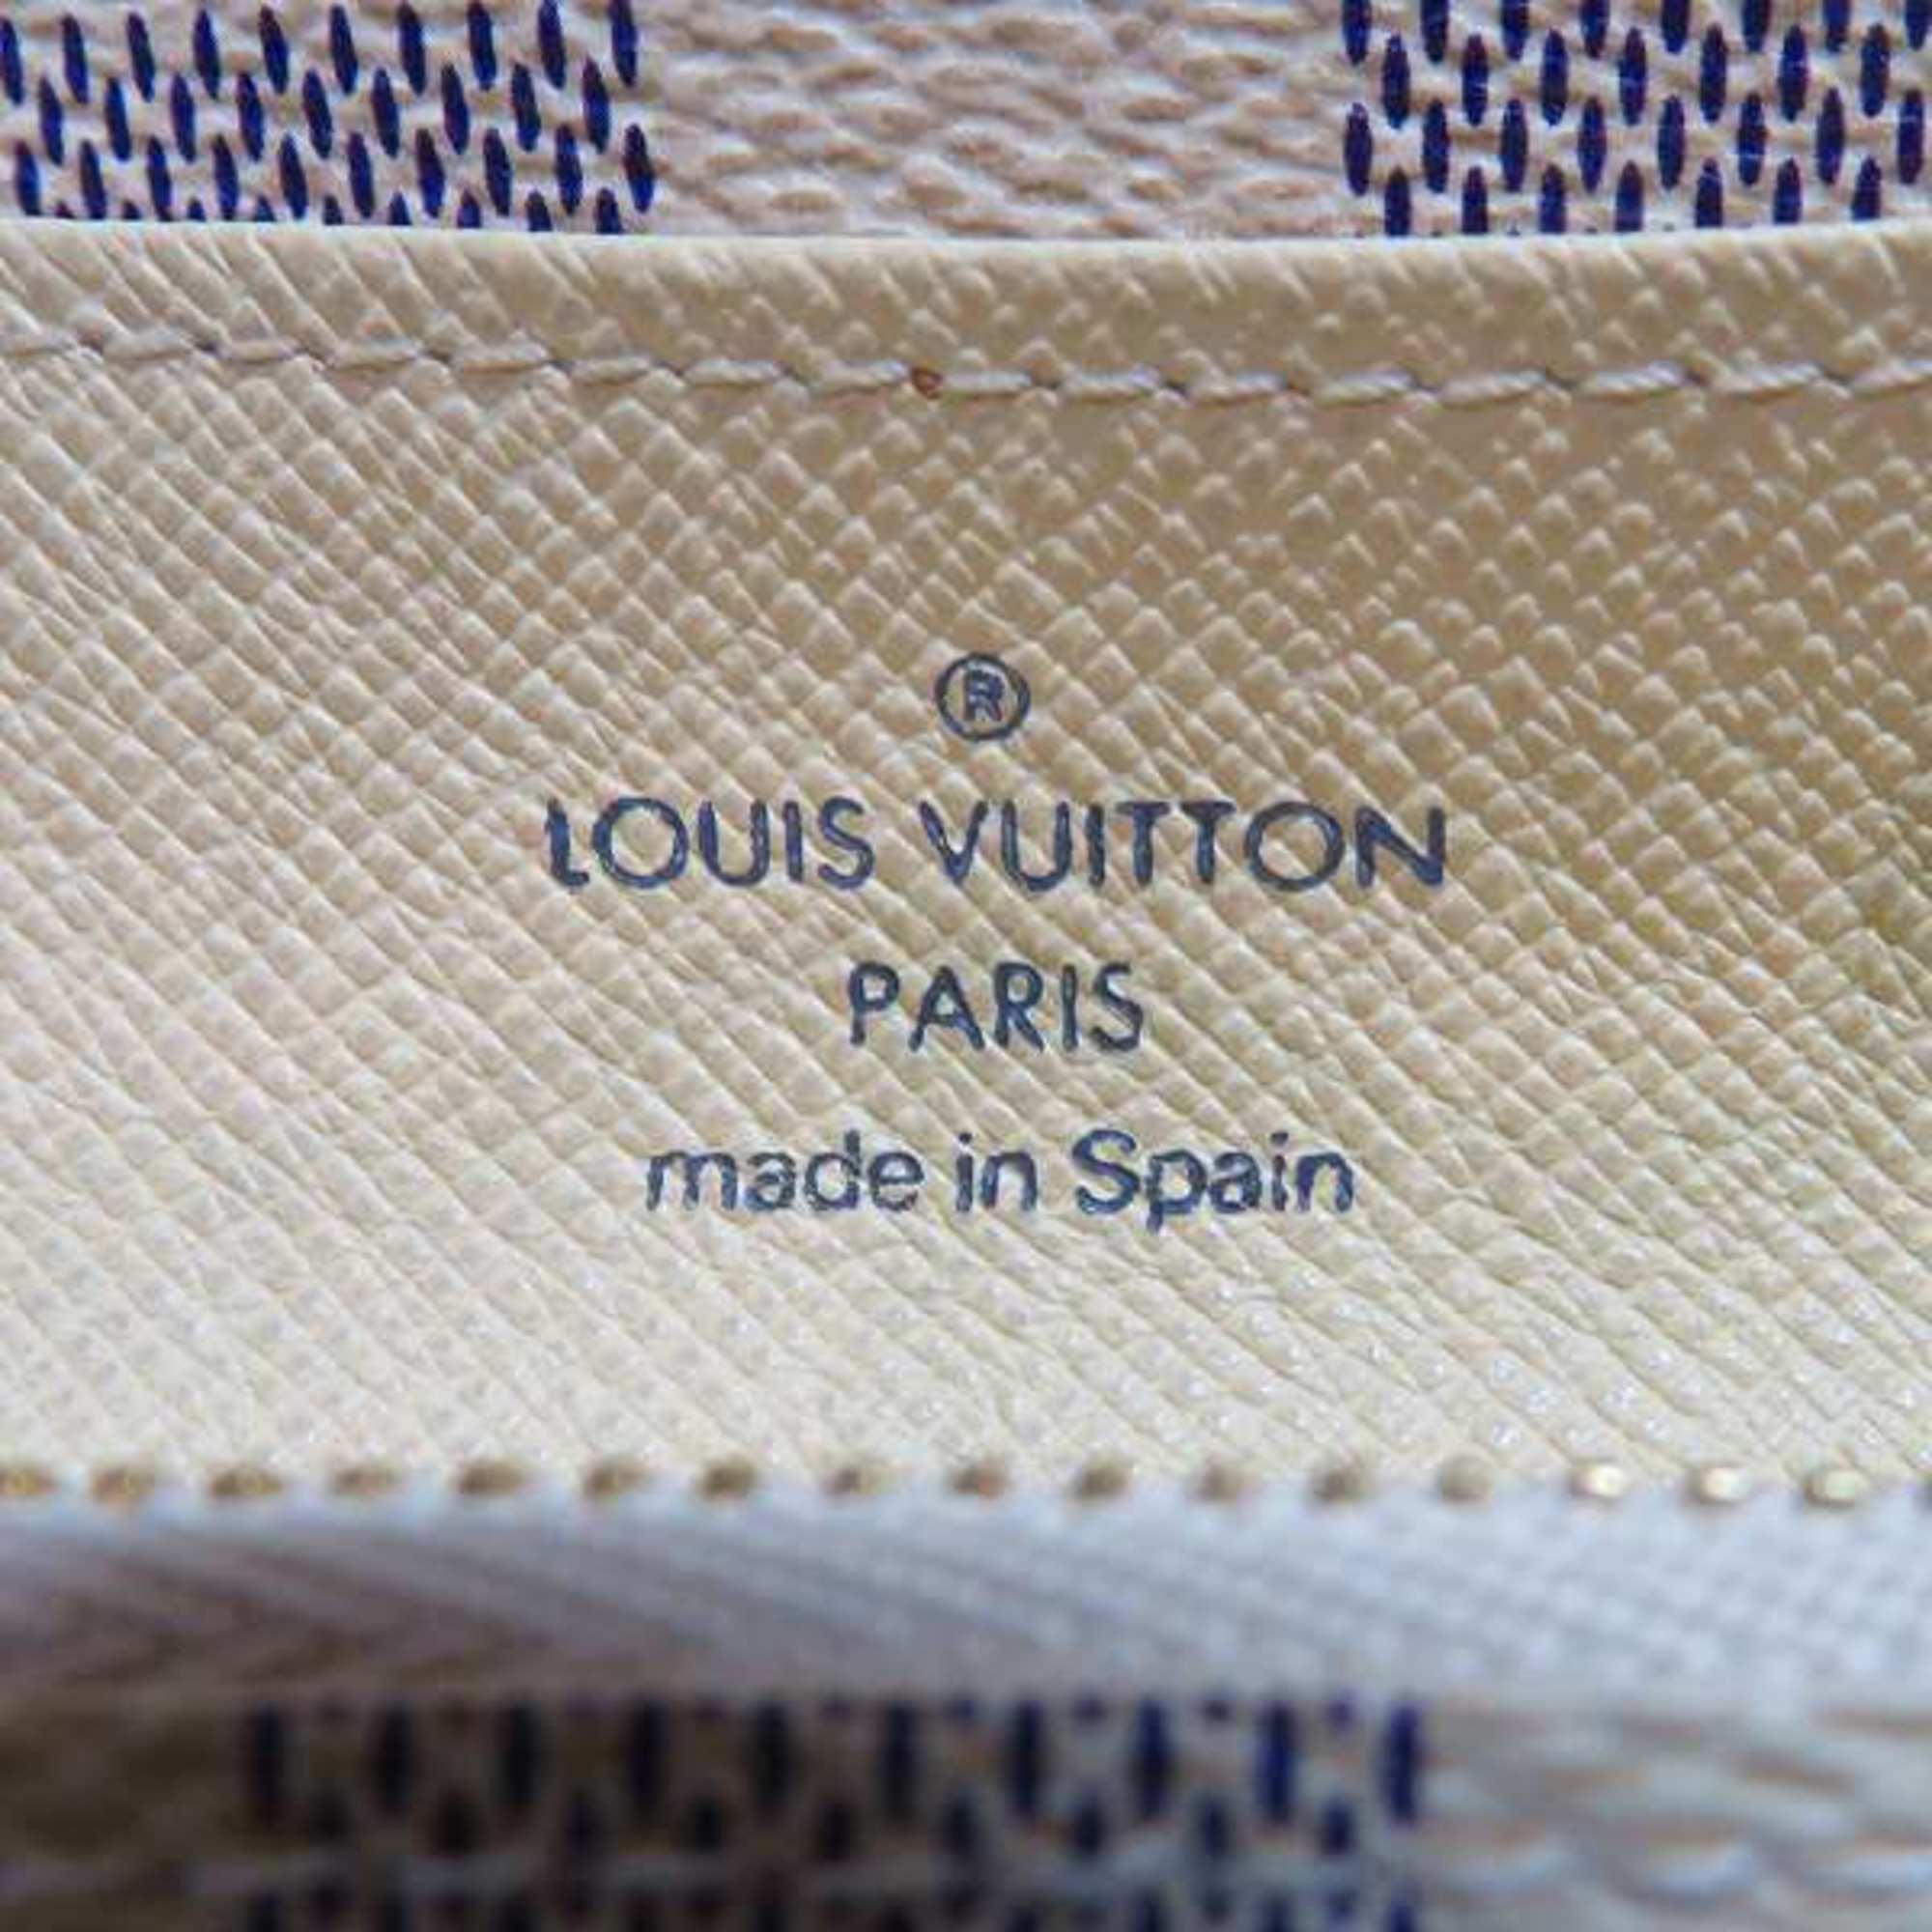 Louis Vuitton Damier Azur Portefeuille Emilie N63021 Long Wallet for Women